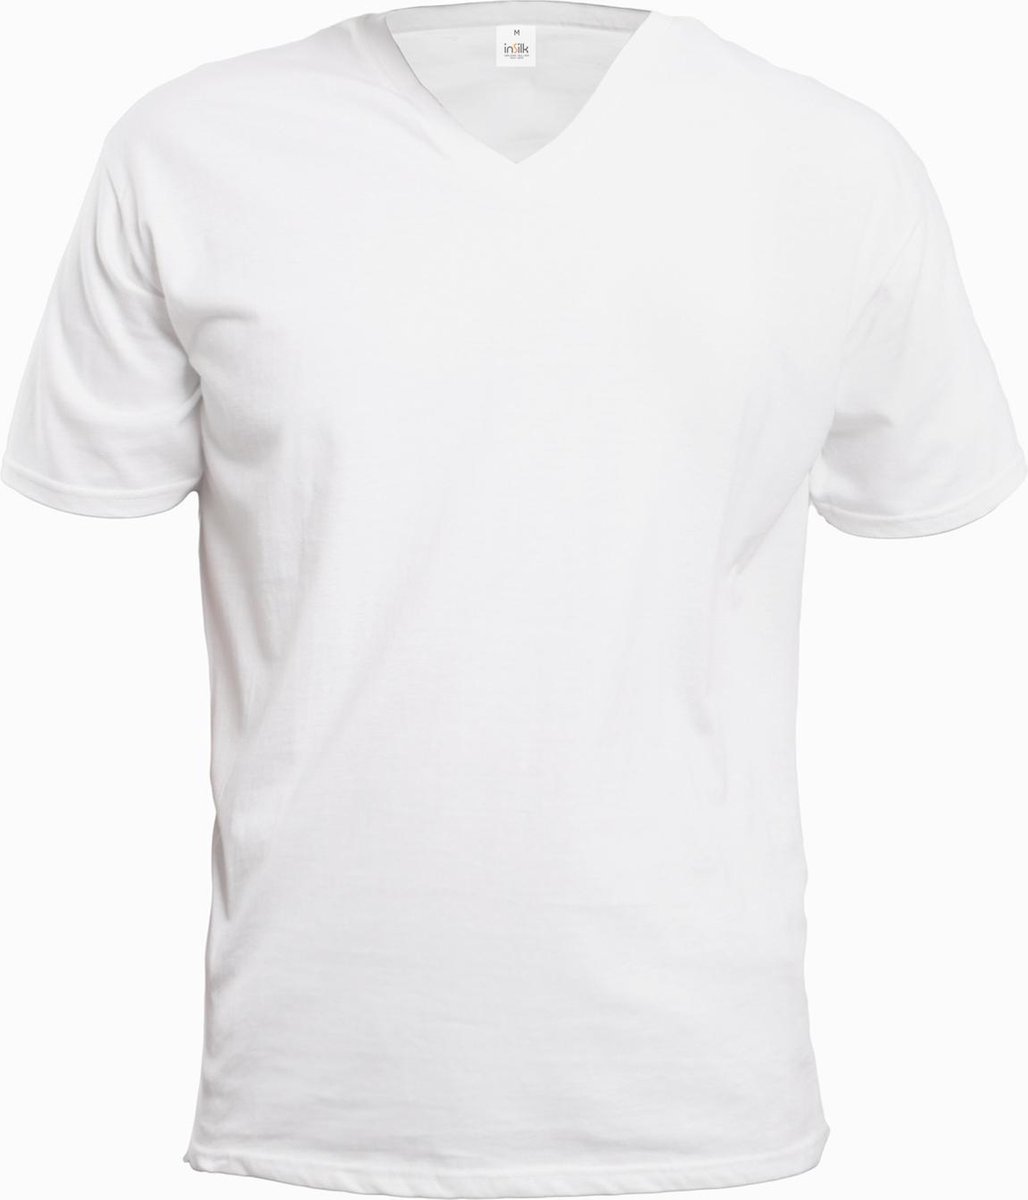 Zijden Heren T-Shirt V-Hals Wit Medium - 100% Zijde